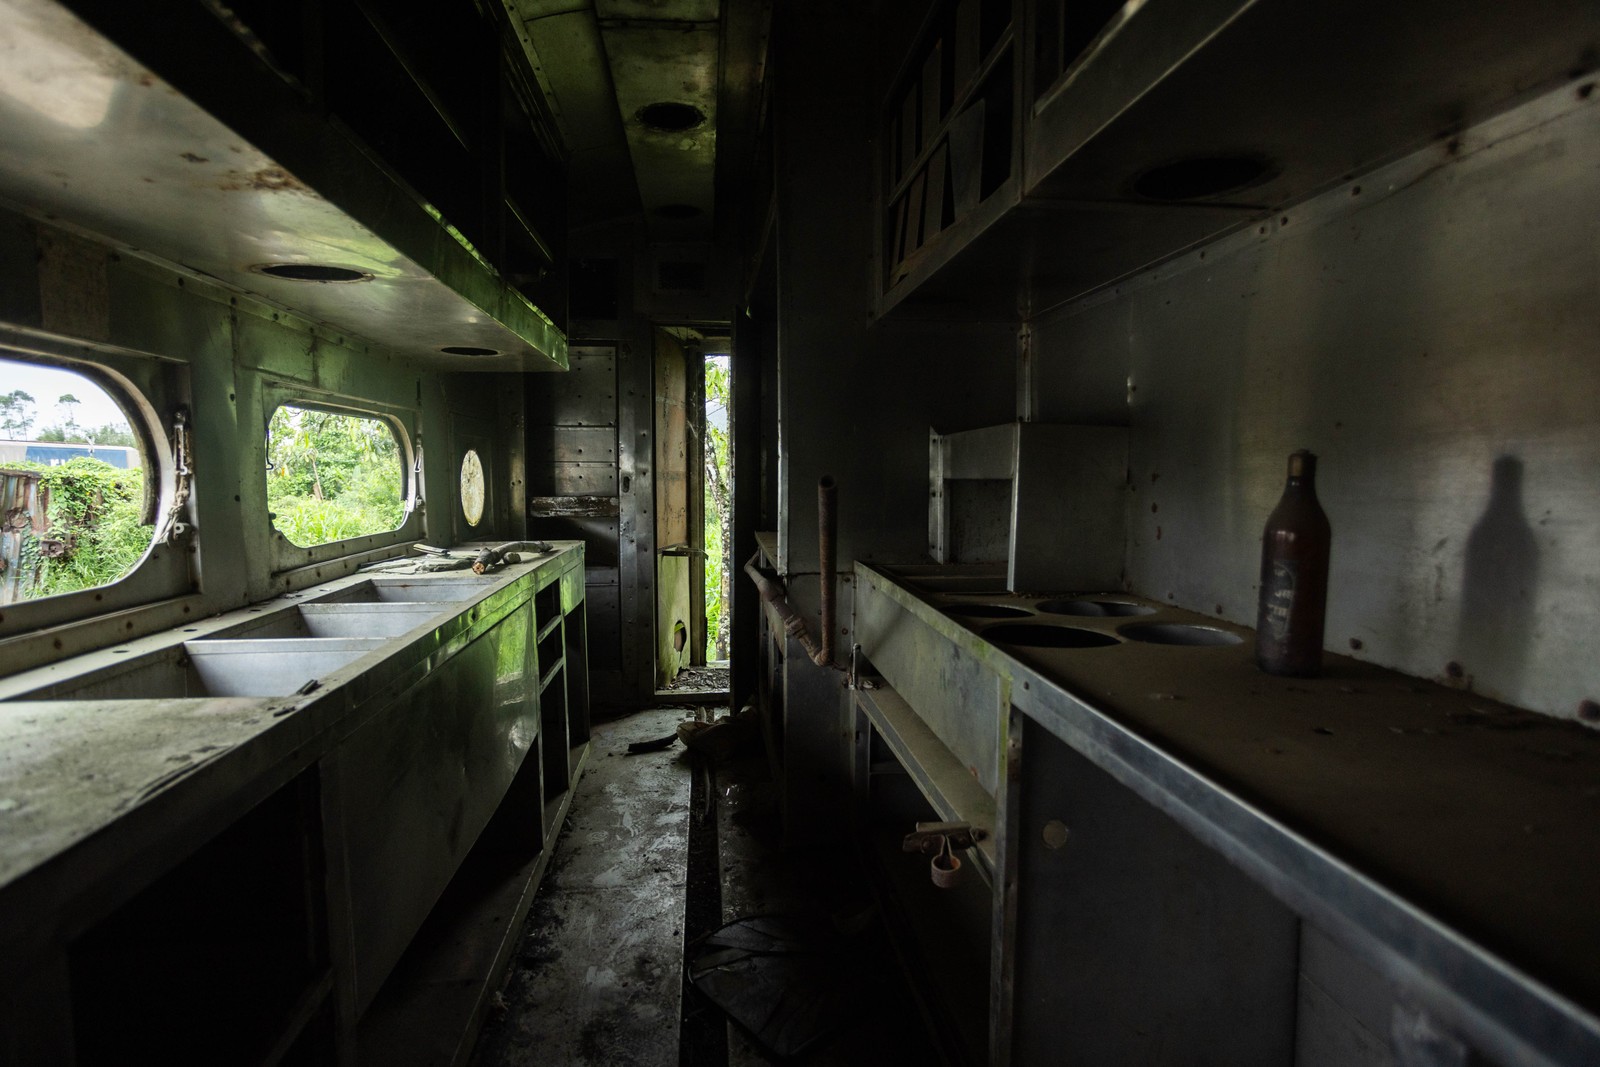 Cozinha industrial no interior de vagão abandonado no Pátio Ferroviário Paratinga — Foto: Maria Isabel Oliveira